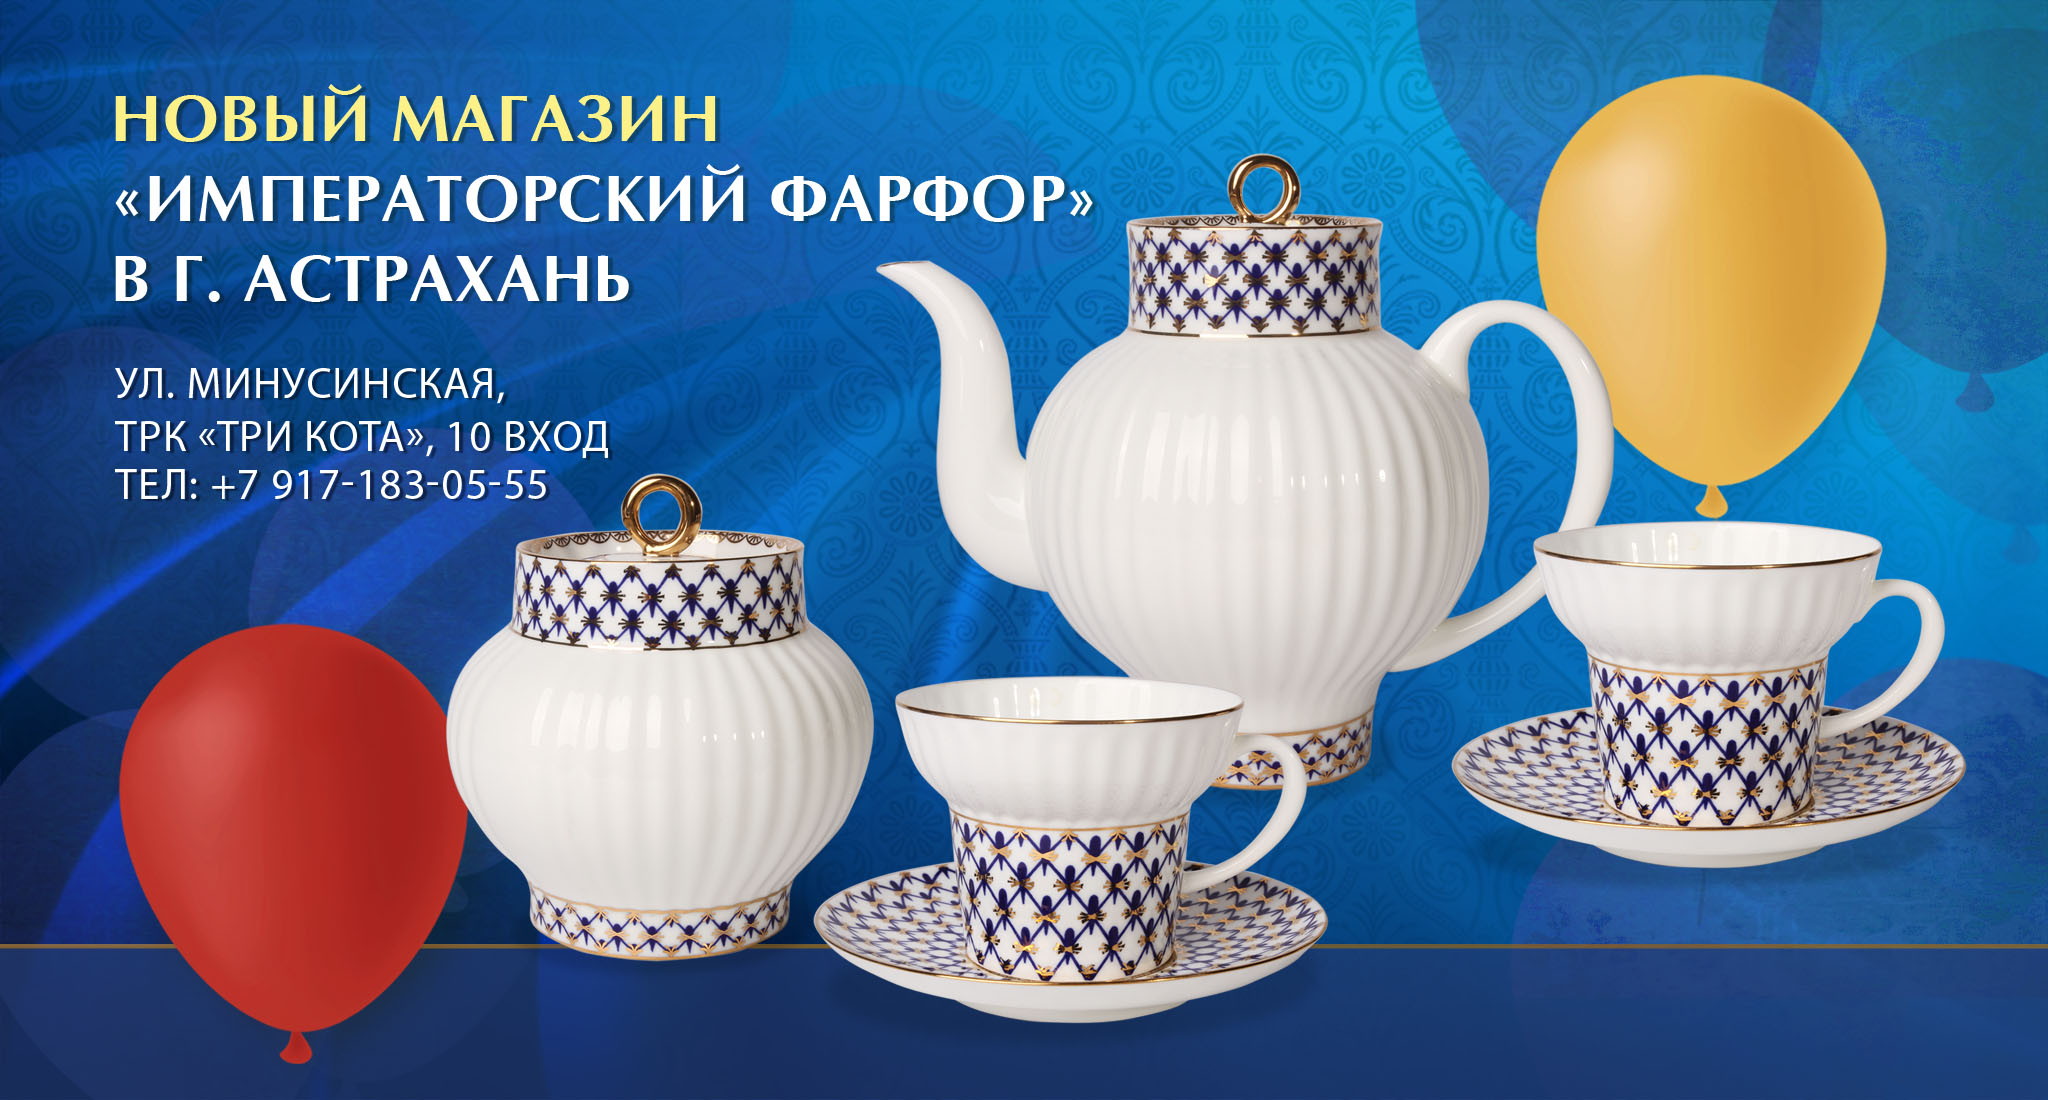  Открылся новый магазин «Императорский фарфор» в г. Астрахань